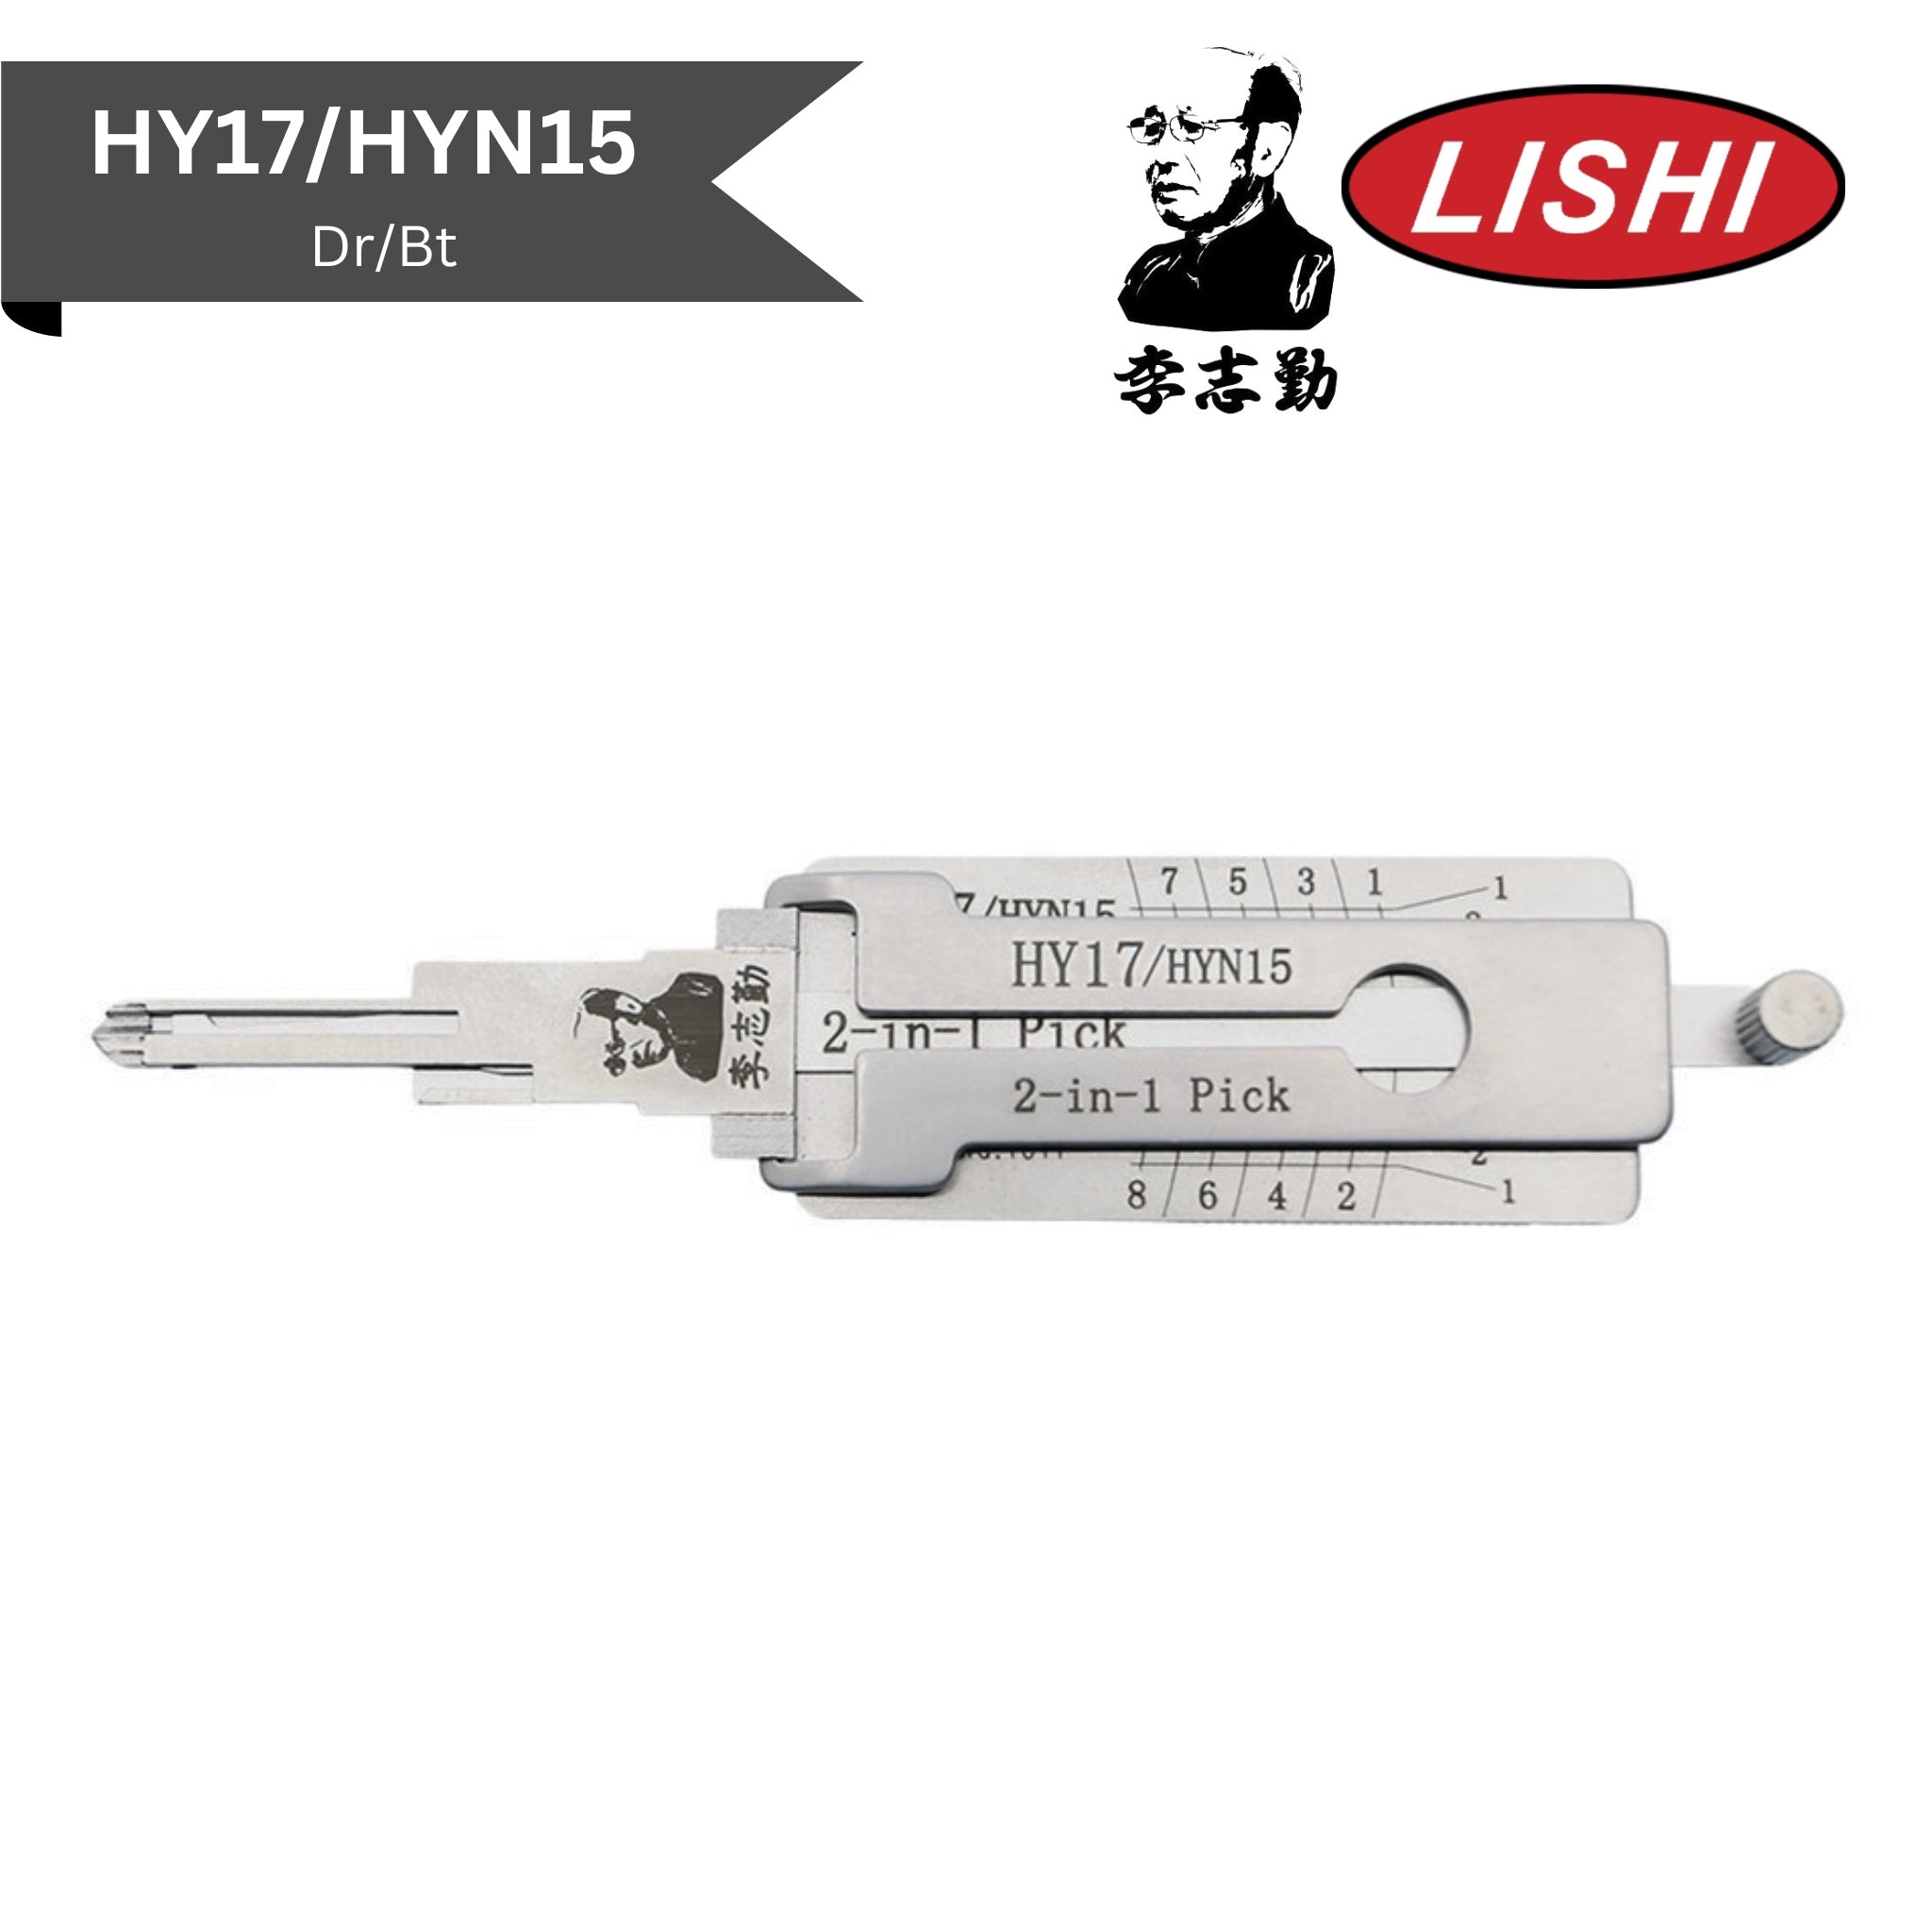 Original Lishi - Hyundai HY17/HYN15 (Dr/Bt) - 2-In-1 Pick/Decoder - AG